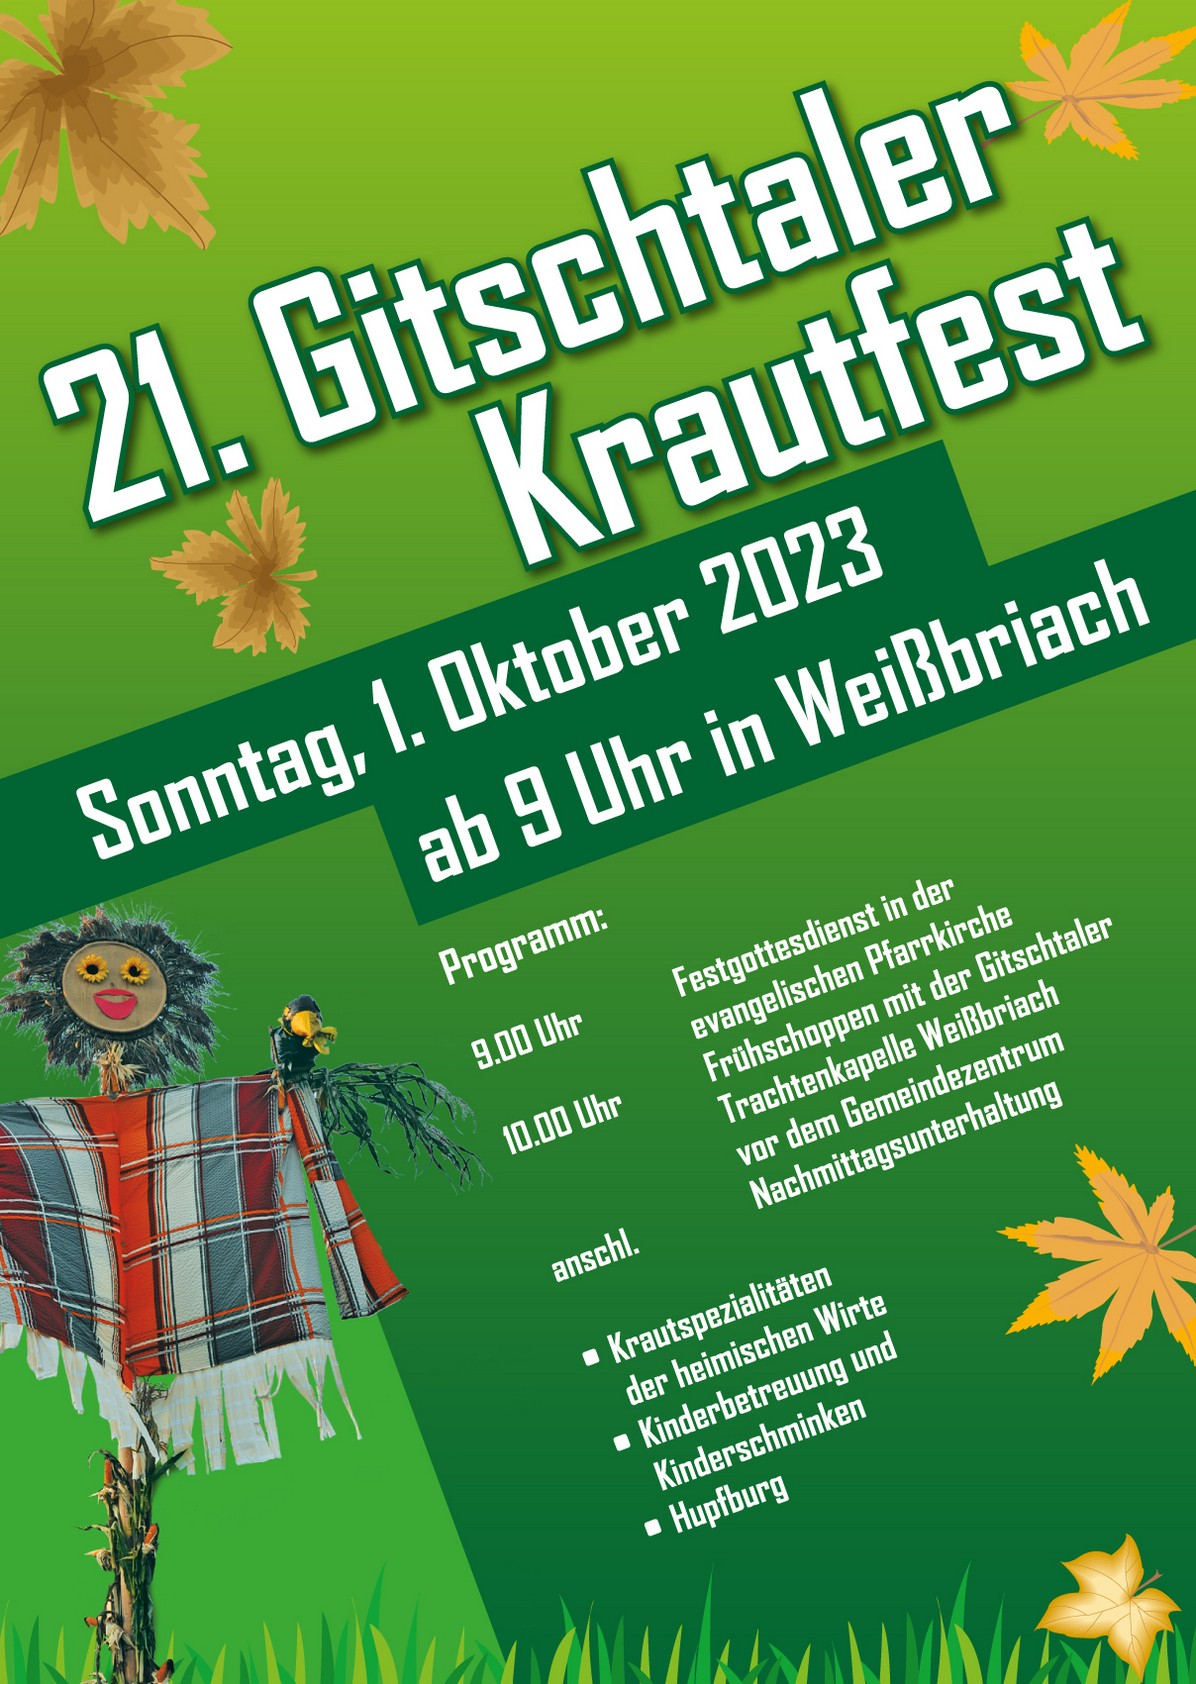 21. Gitschtaler Krautfest 